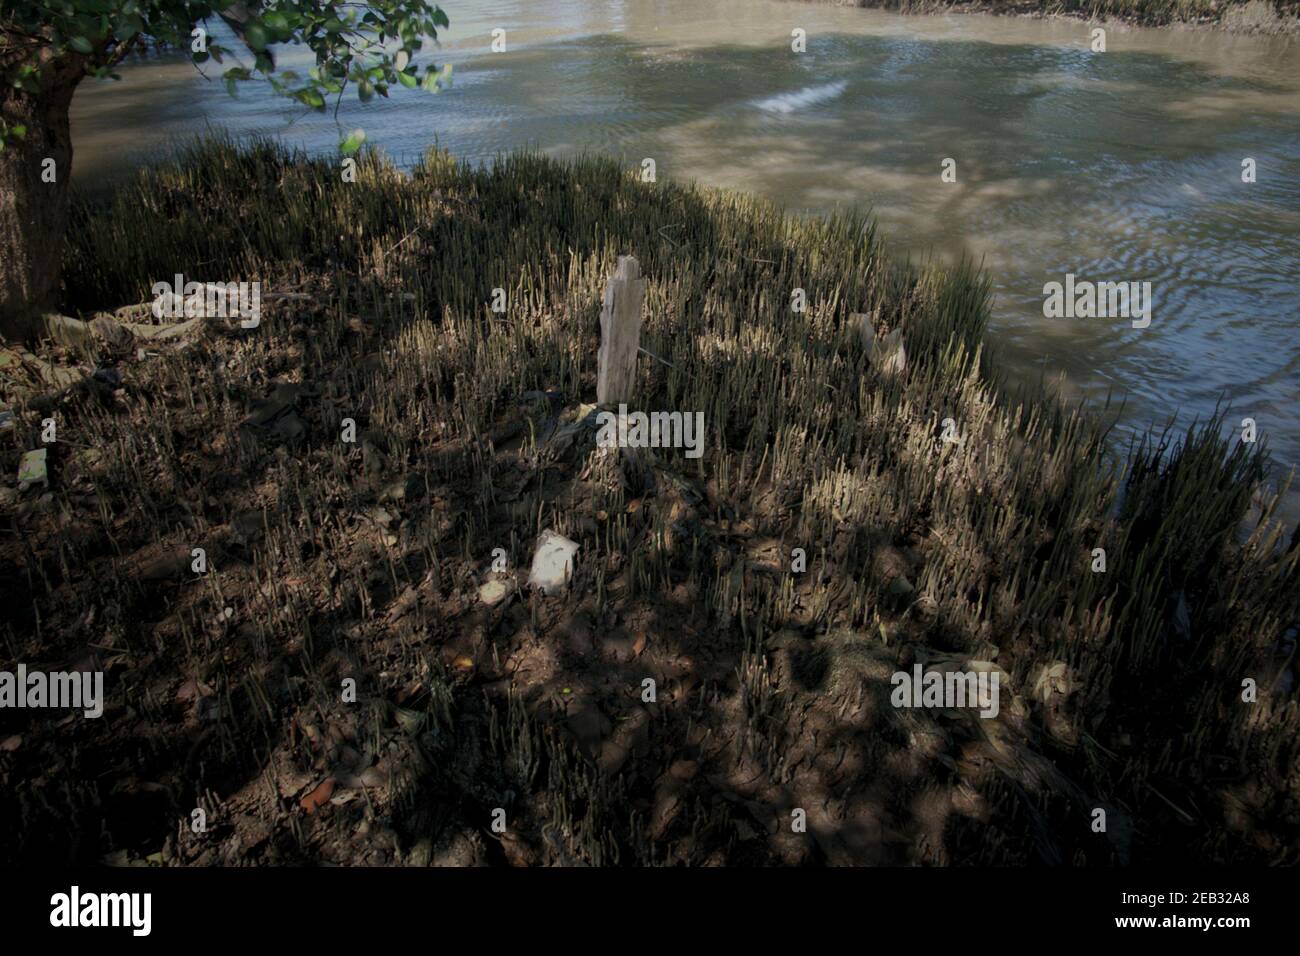 Perches et portées en bois entre les mangroves, près du village de Kamal Muara, dans la zone côtière de Jakarta, en Indonésie. Banque D'Images